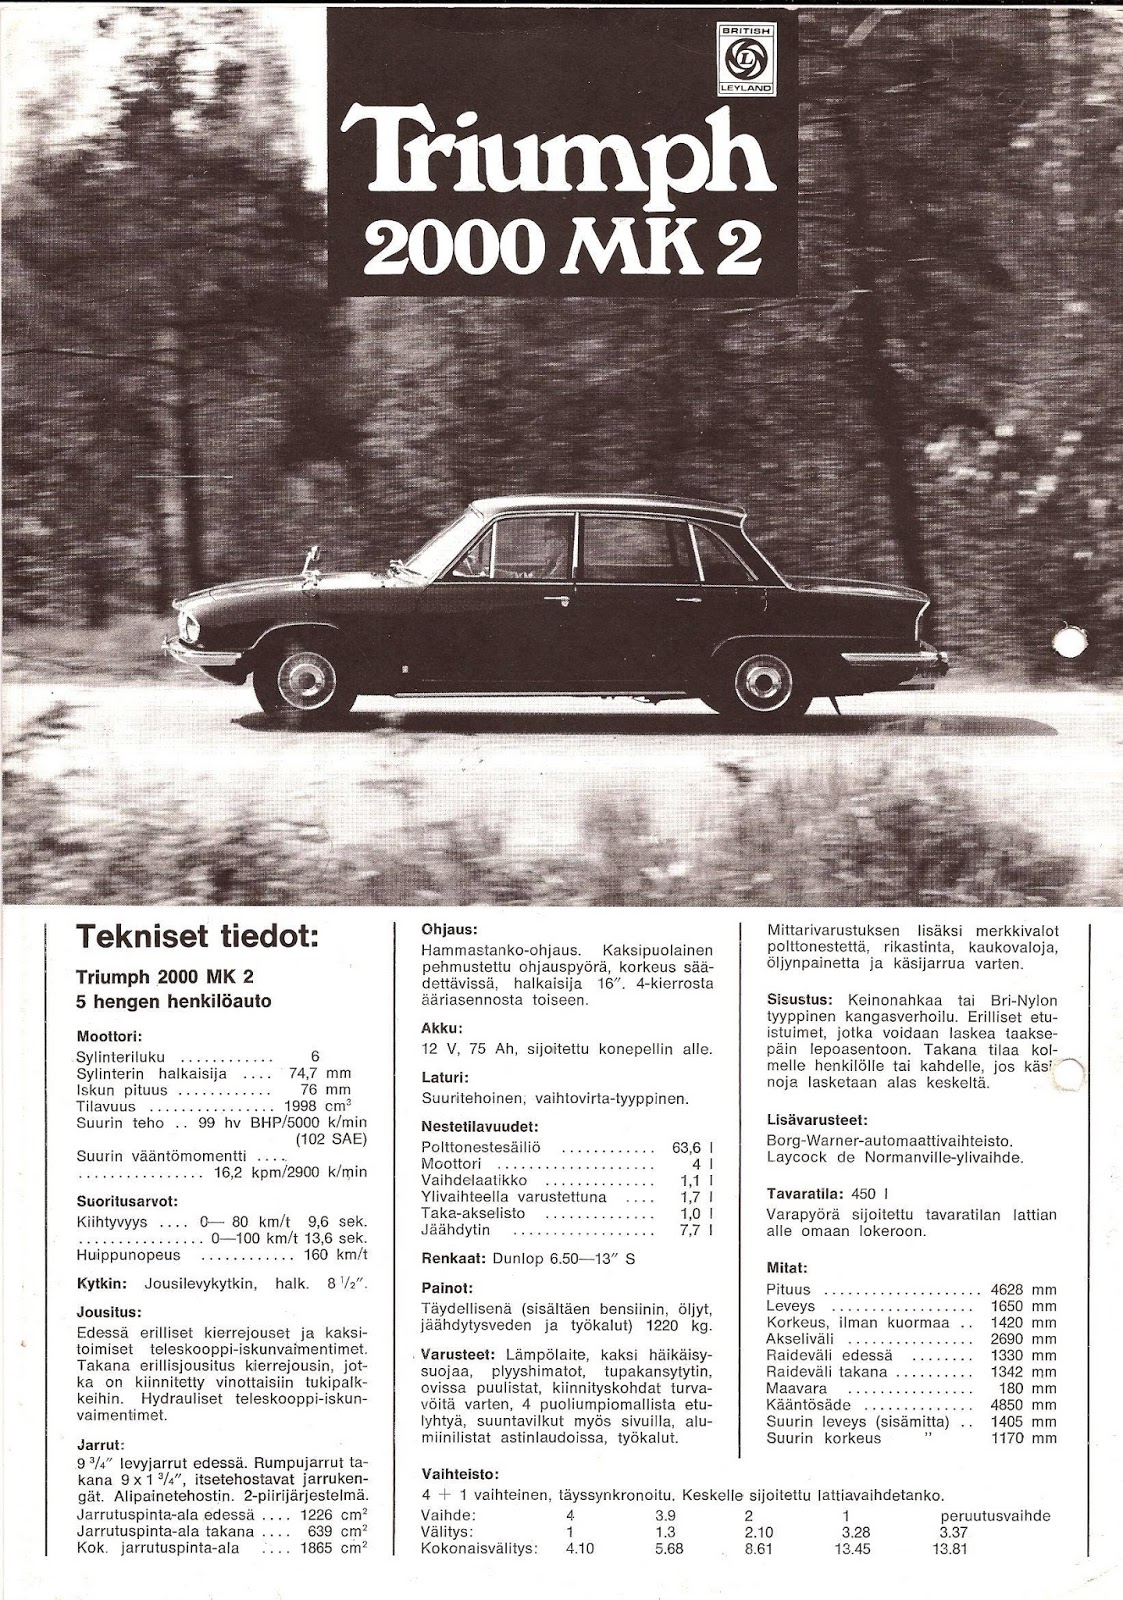 Vitessesteve Blog Triumph Car Dealers In Finland Triumph 2000 Mk2